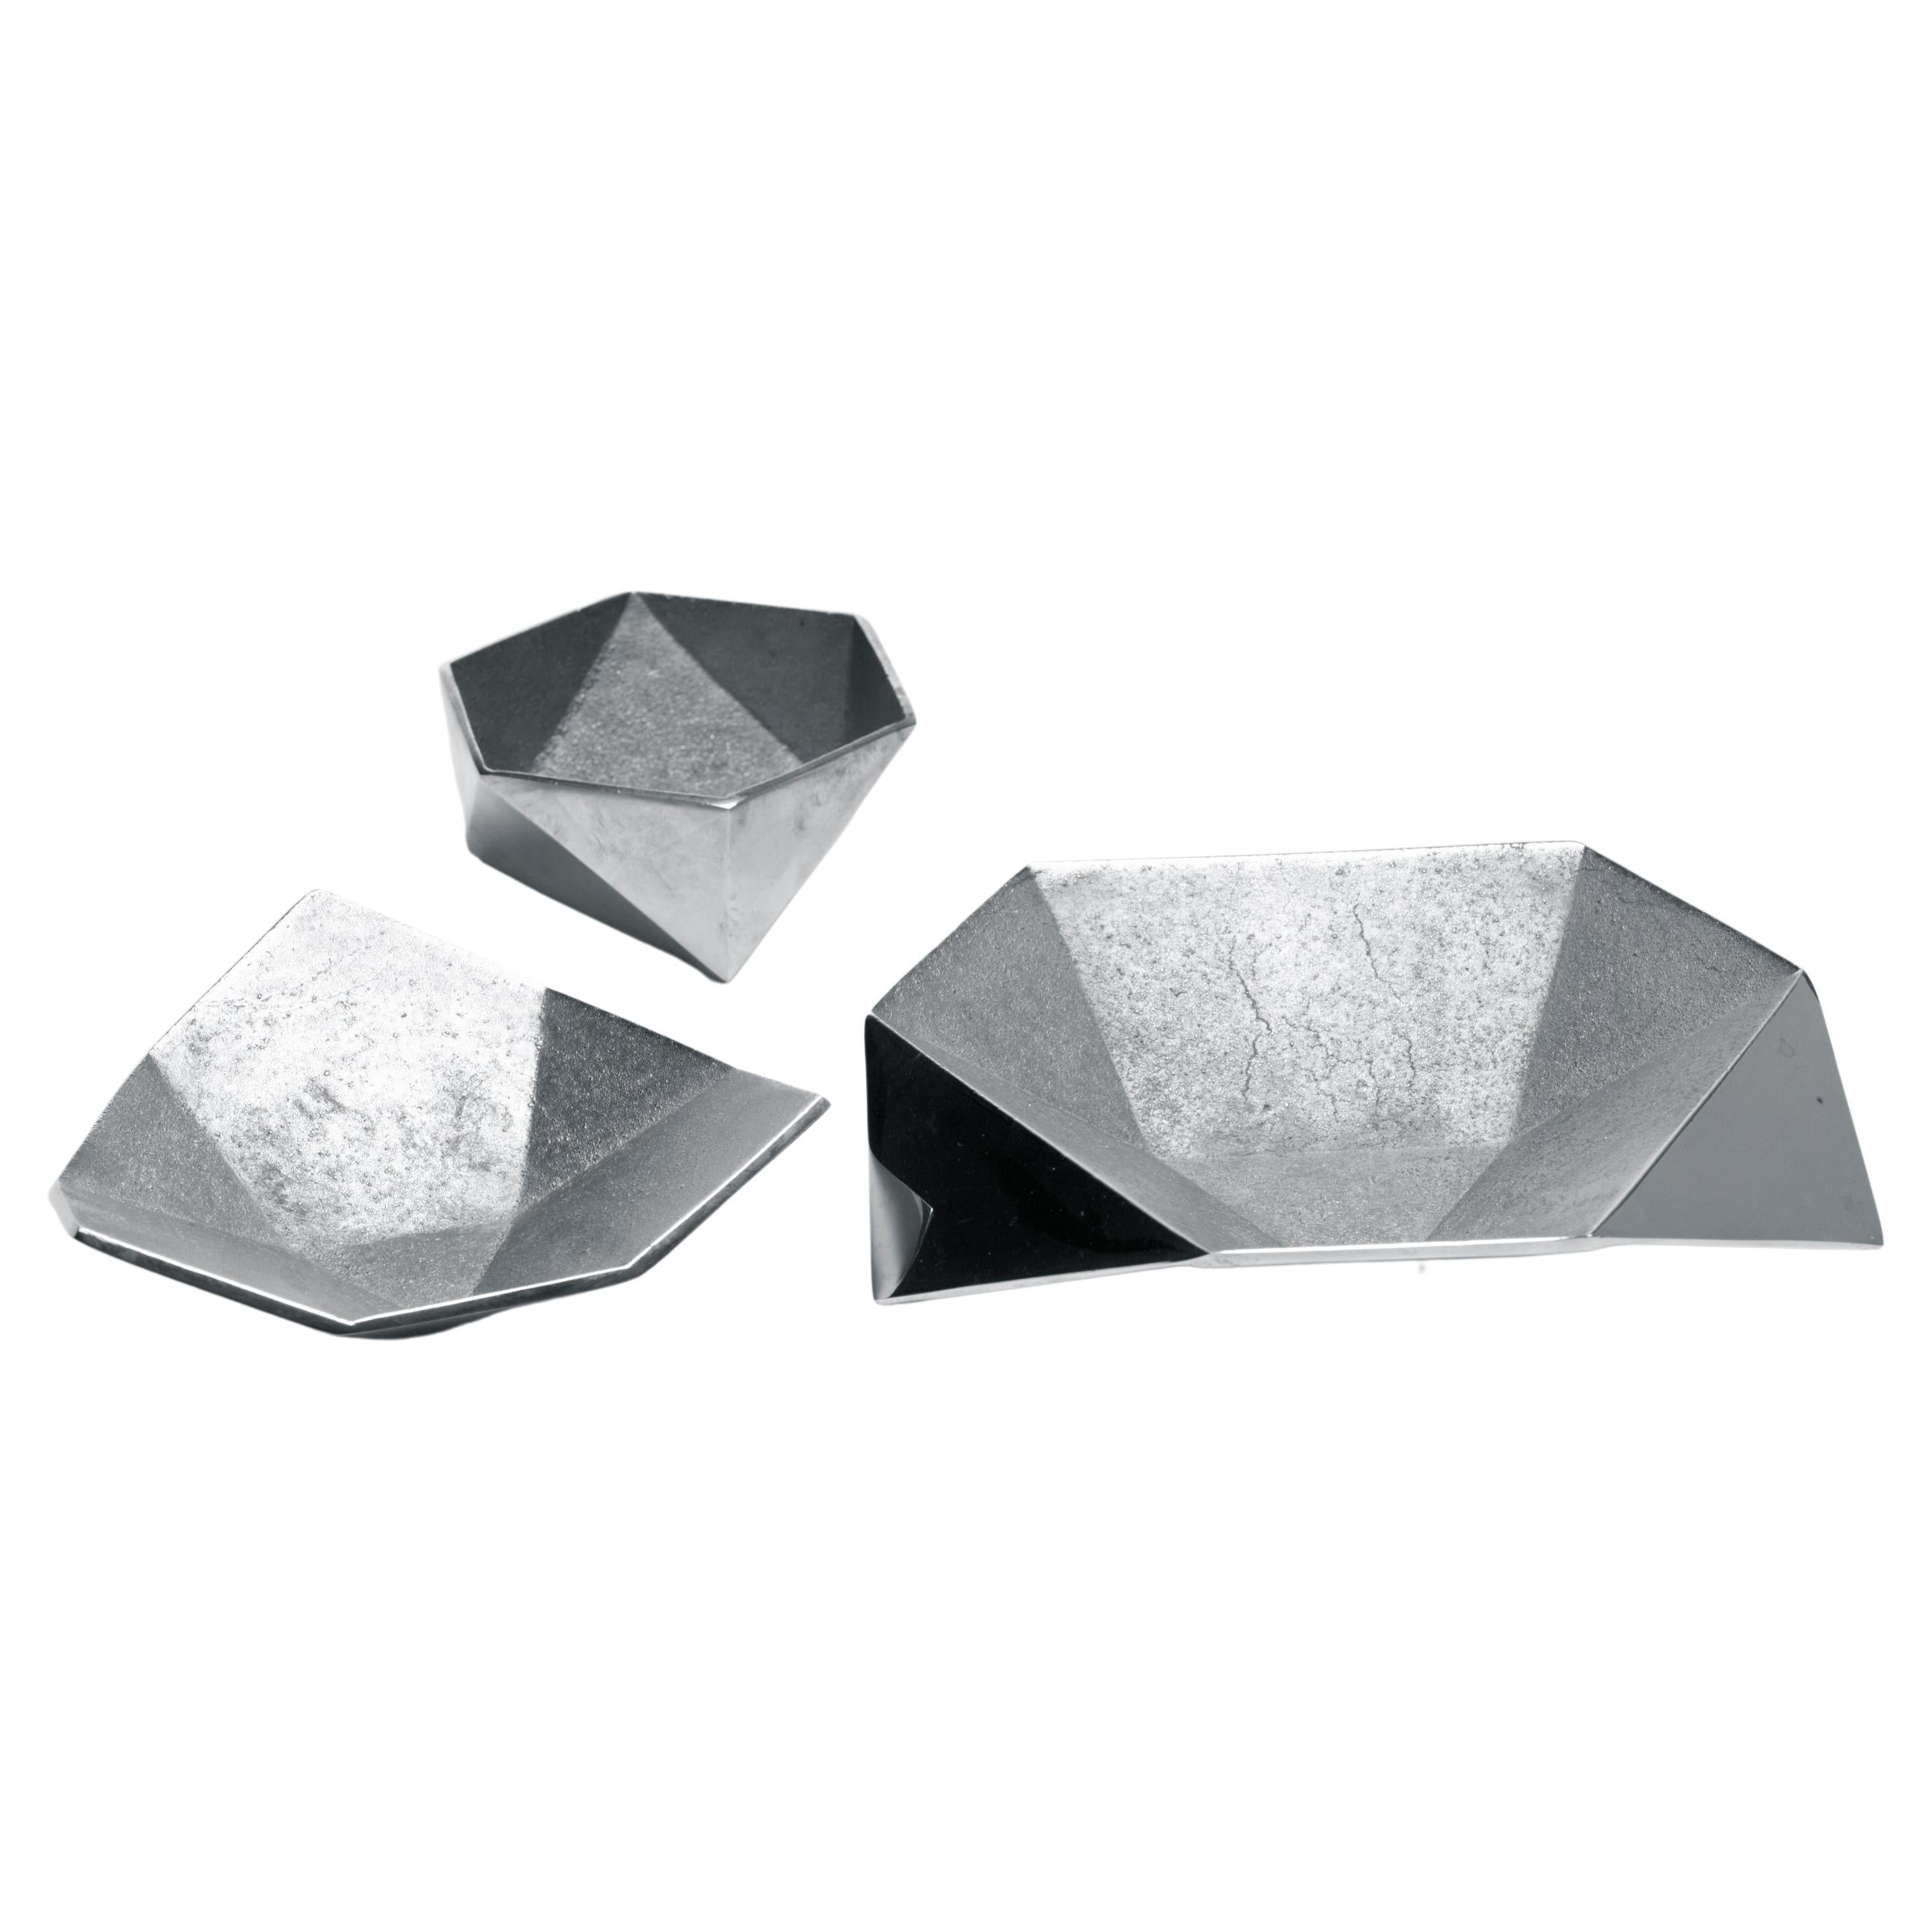 Origami-Schalen „Aluminum“ (in dreier-Set erhältlich)